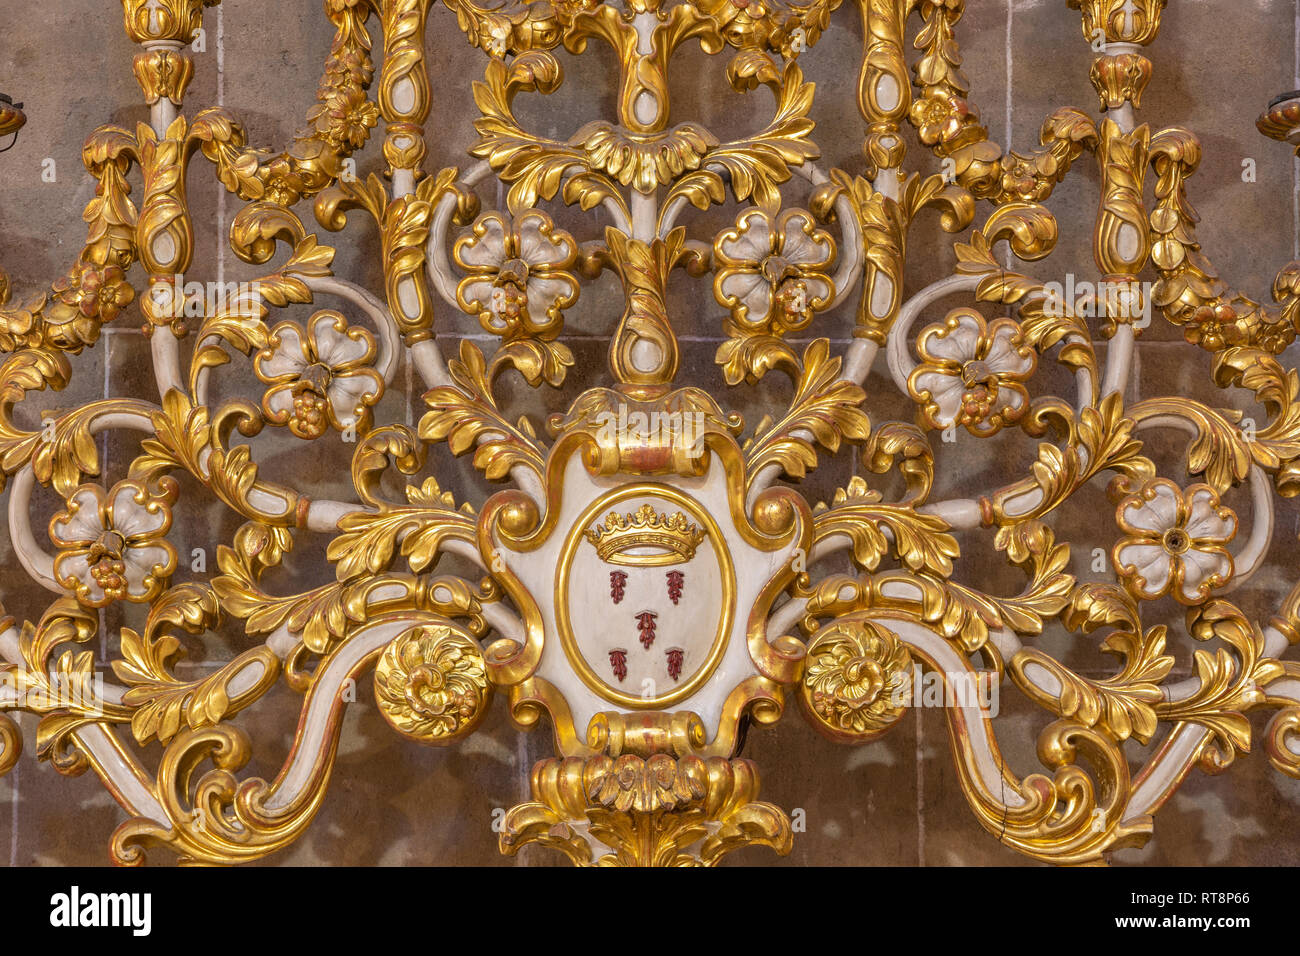 PALMA DE MALLORCA, SPANIEN - Januar 29, 2019: Das Detail barocker Leuchter in der Kirche Esglesia de la Inmaculada Concepcion. Stockfoto